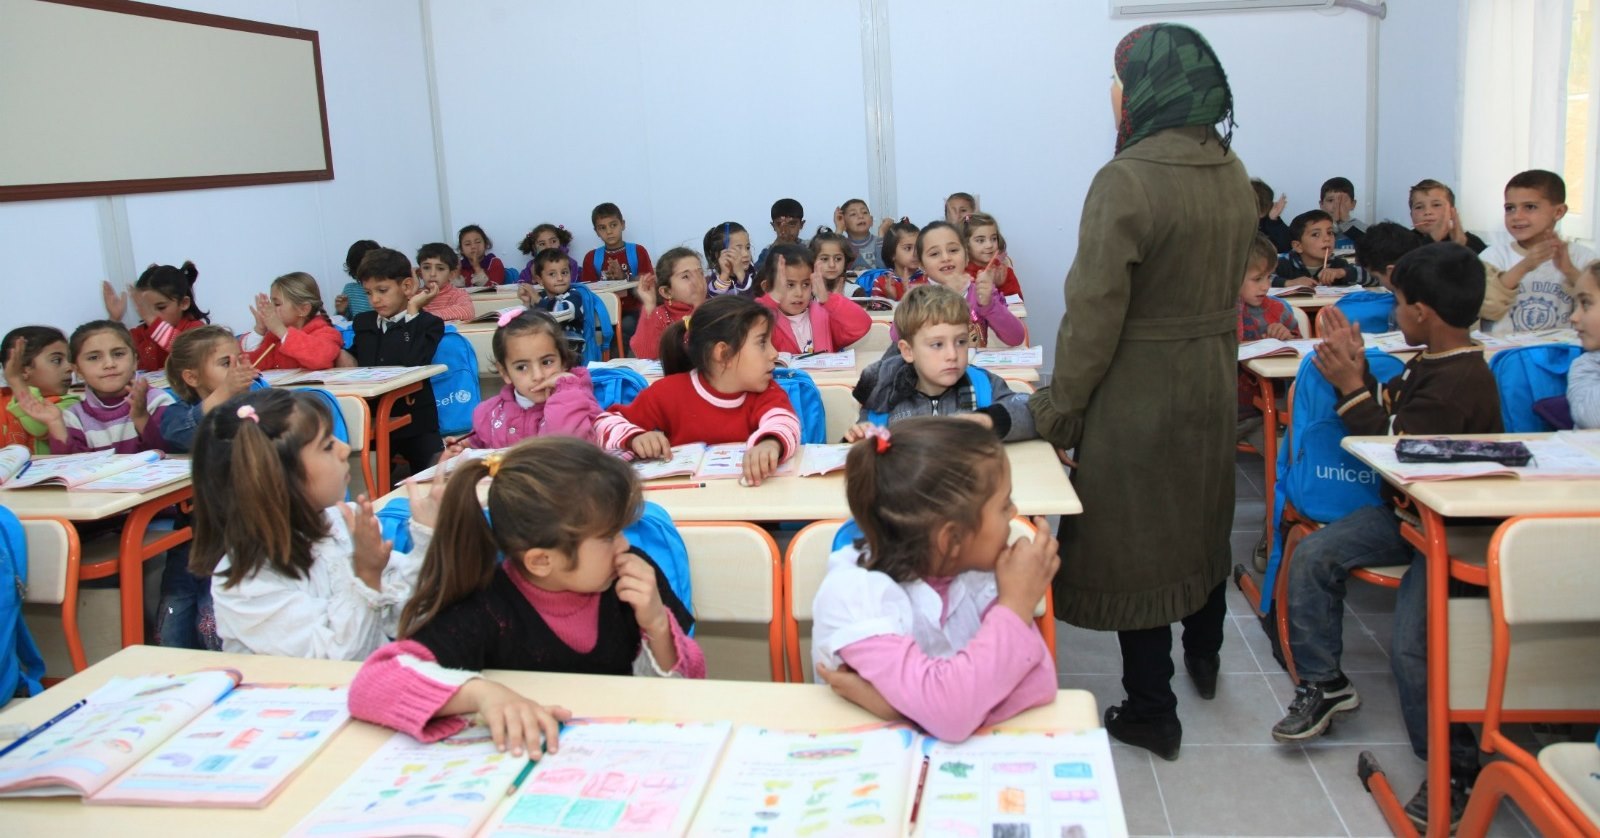 بدعم أوروبي.. ارتفاع معدل التحاق الأطفال السوريين بالمدارس التركية إلى 64%